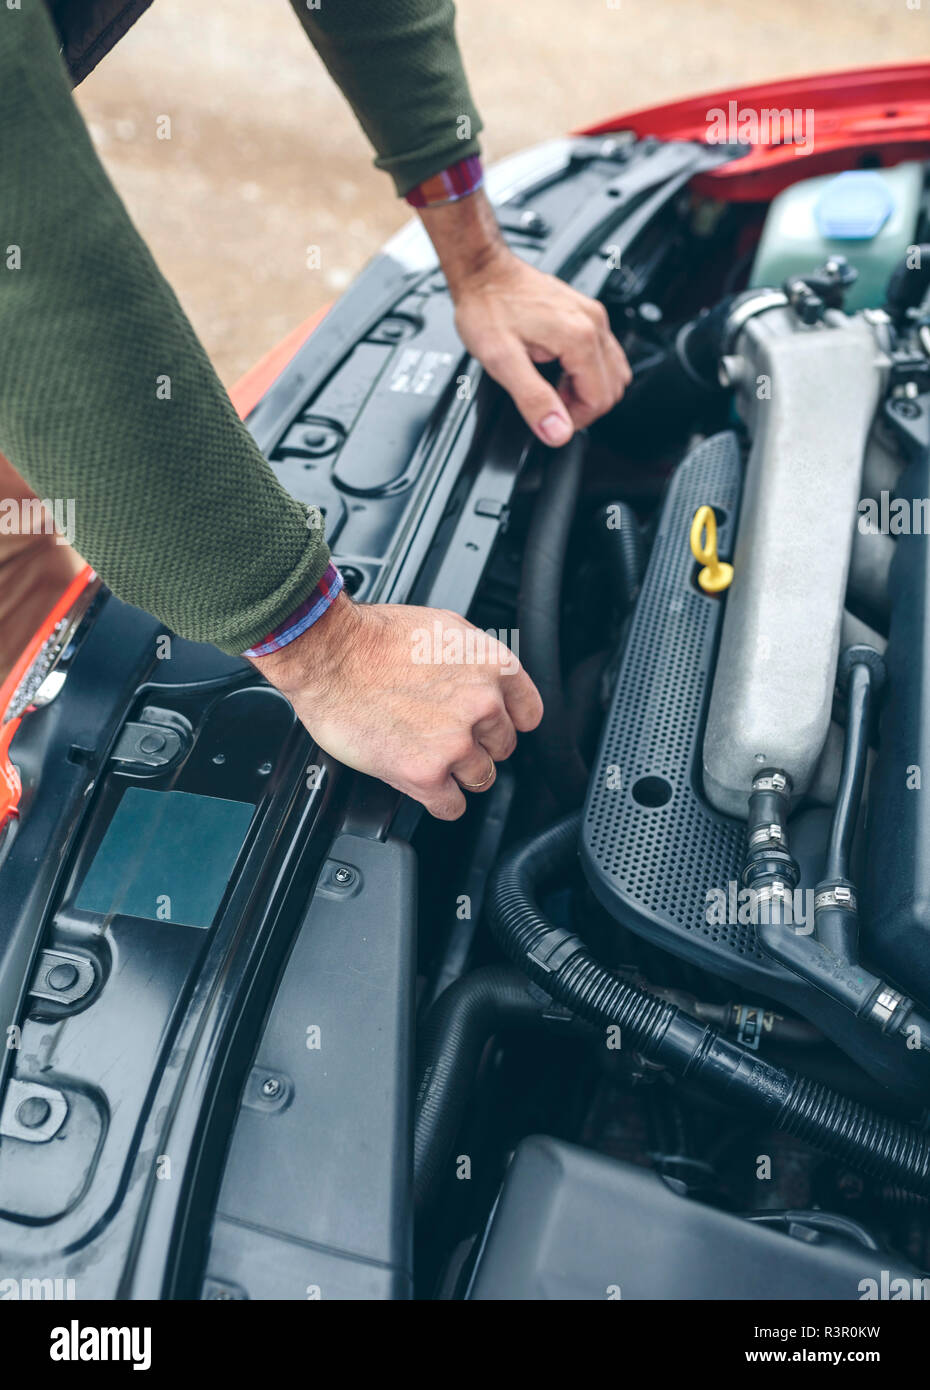 KFZ Mechaniker repariert Motor eines Fahrzeugs in der Autowerkstatt - Close  Up Hand mit Werkzeug im Motorraum Photos